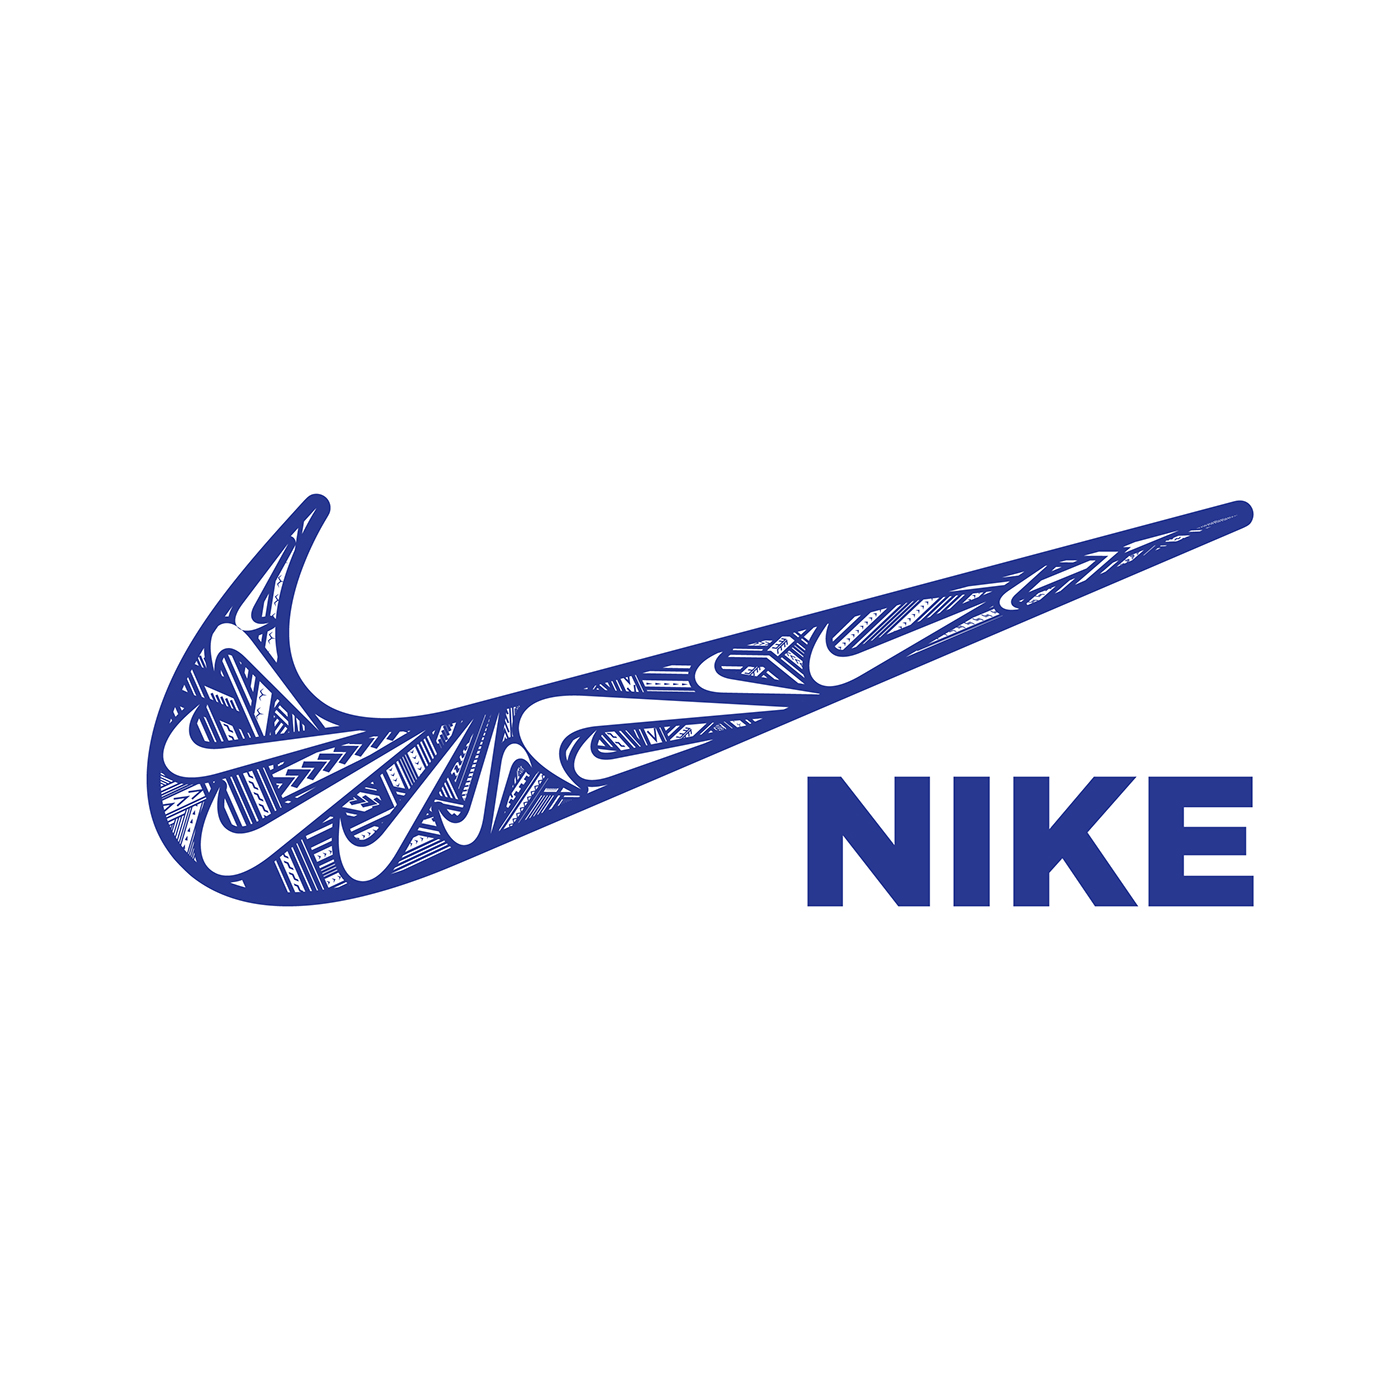 Nike tatau Fiti samoanforged